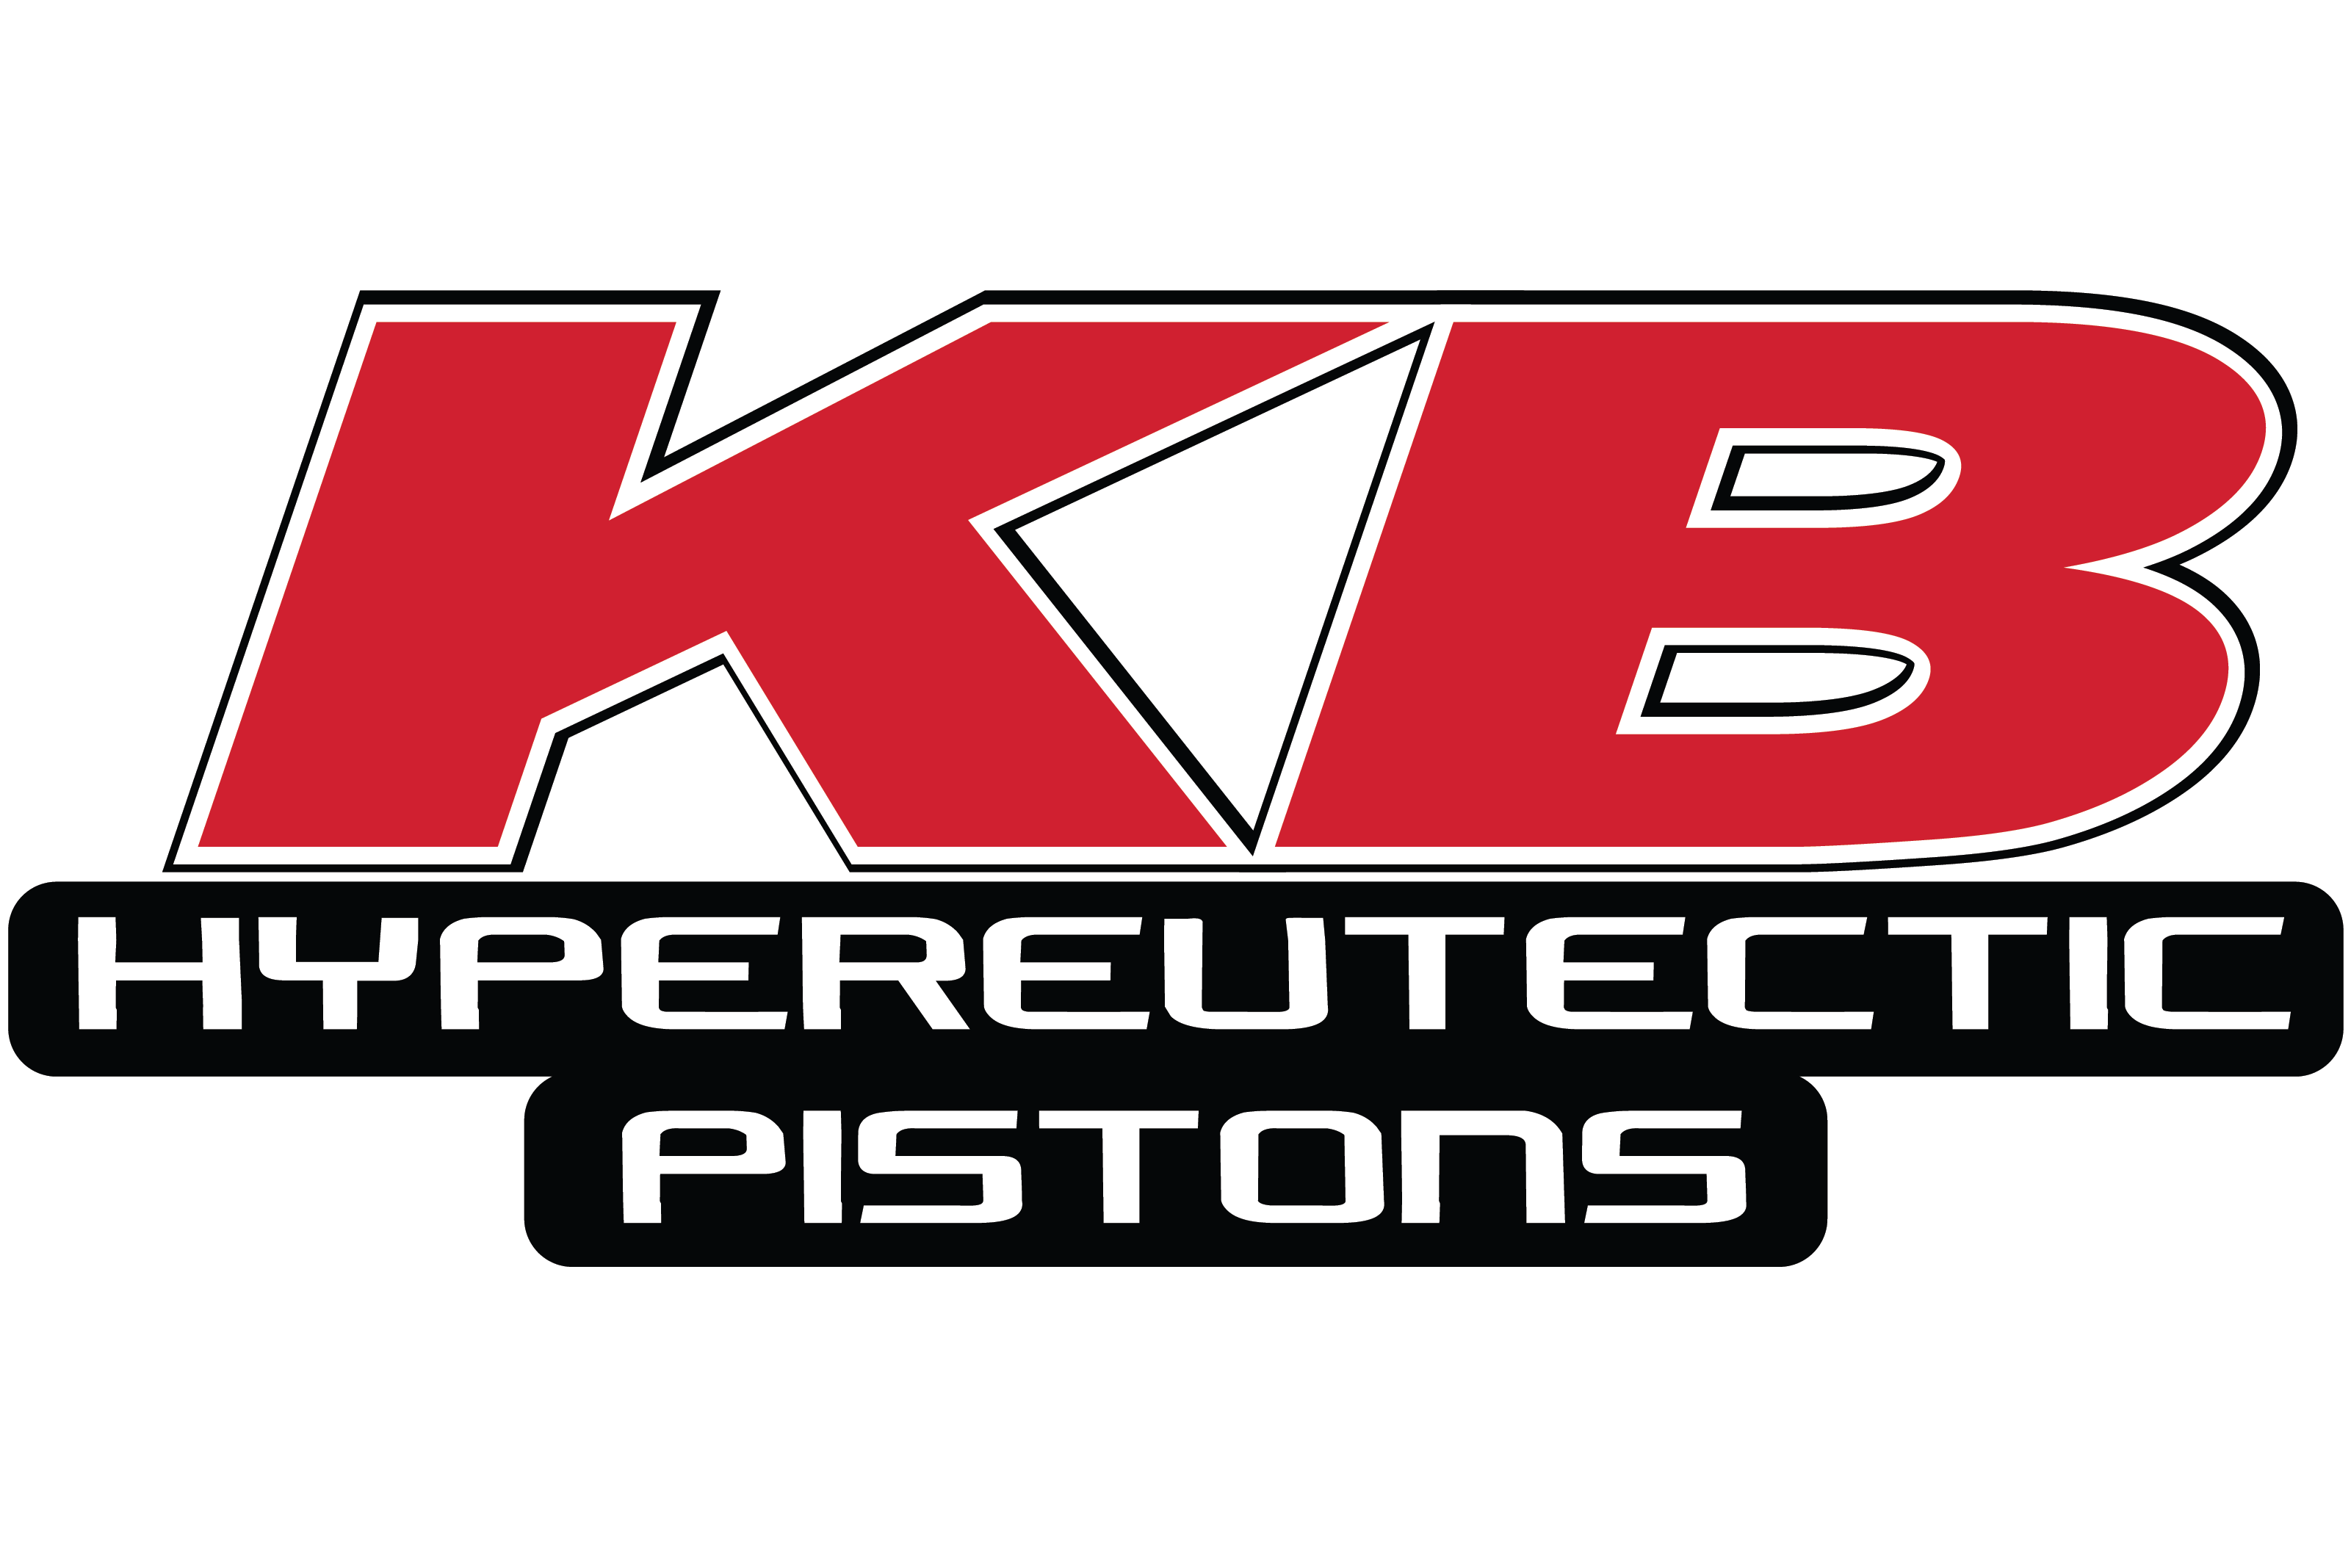 KB Hypereutectic Pistons